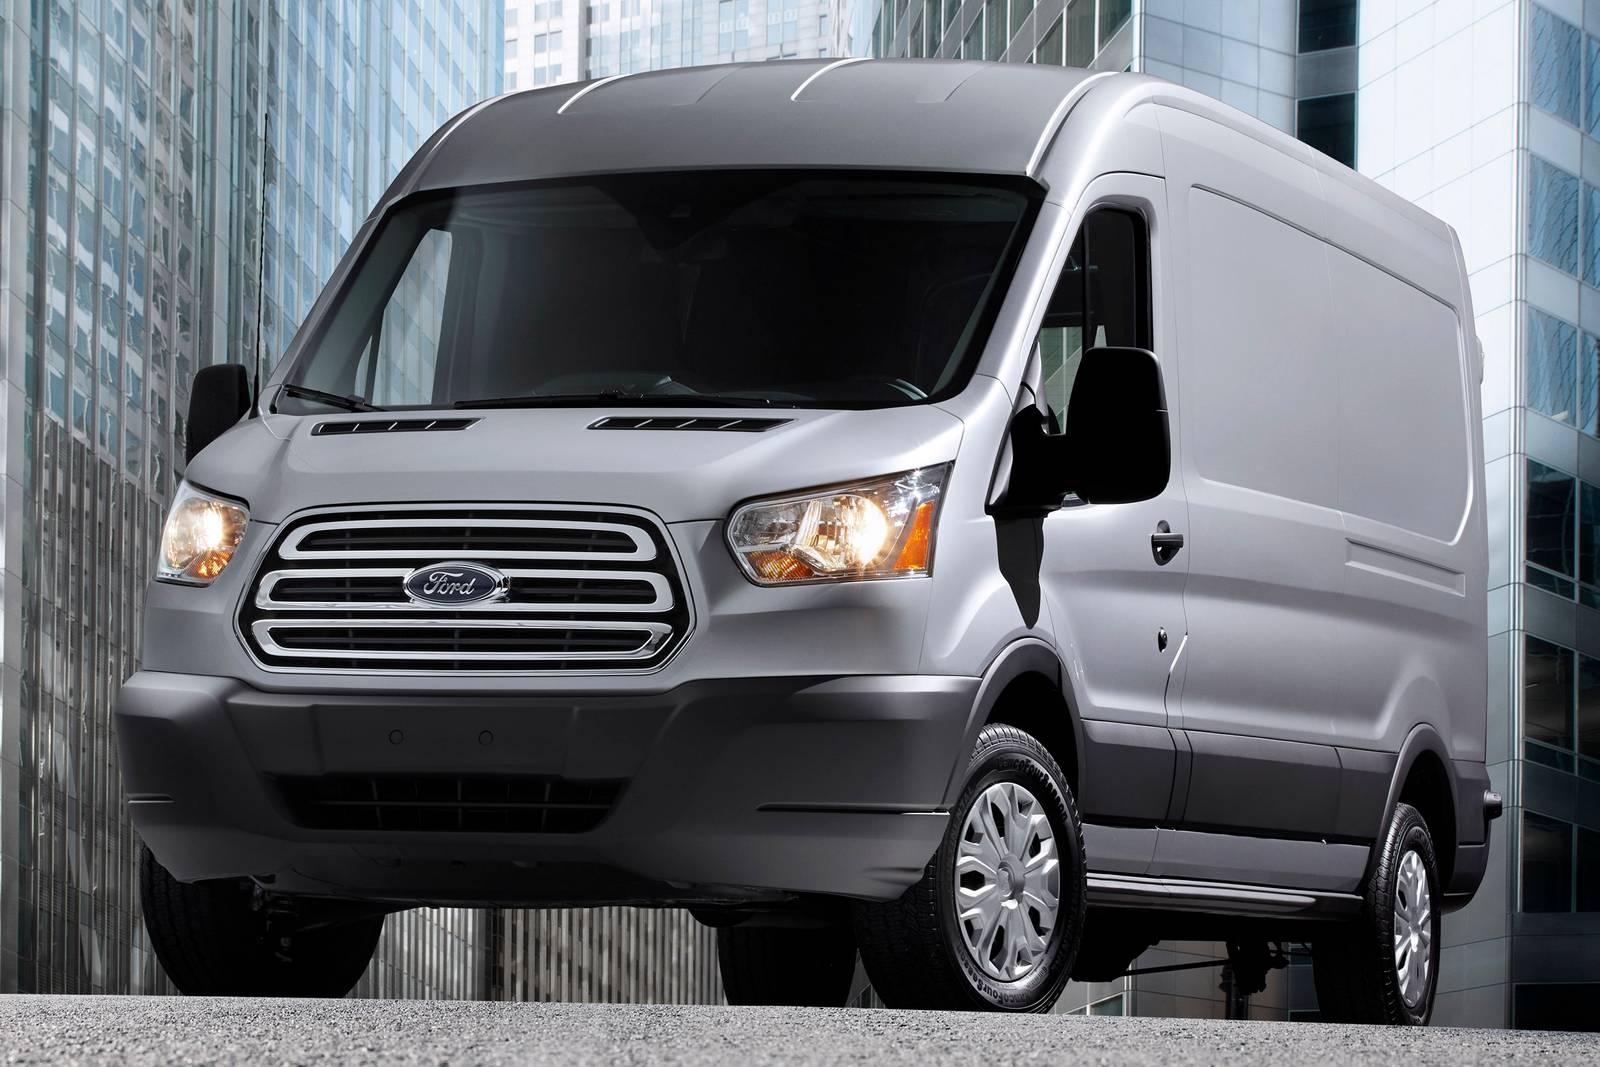 2016 Ford Transit Van Review & Ratings | Edmunds